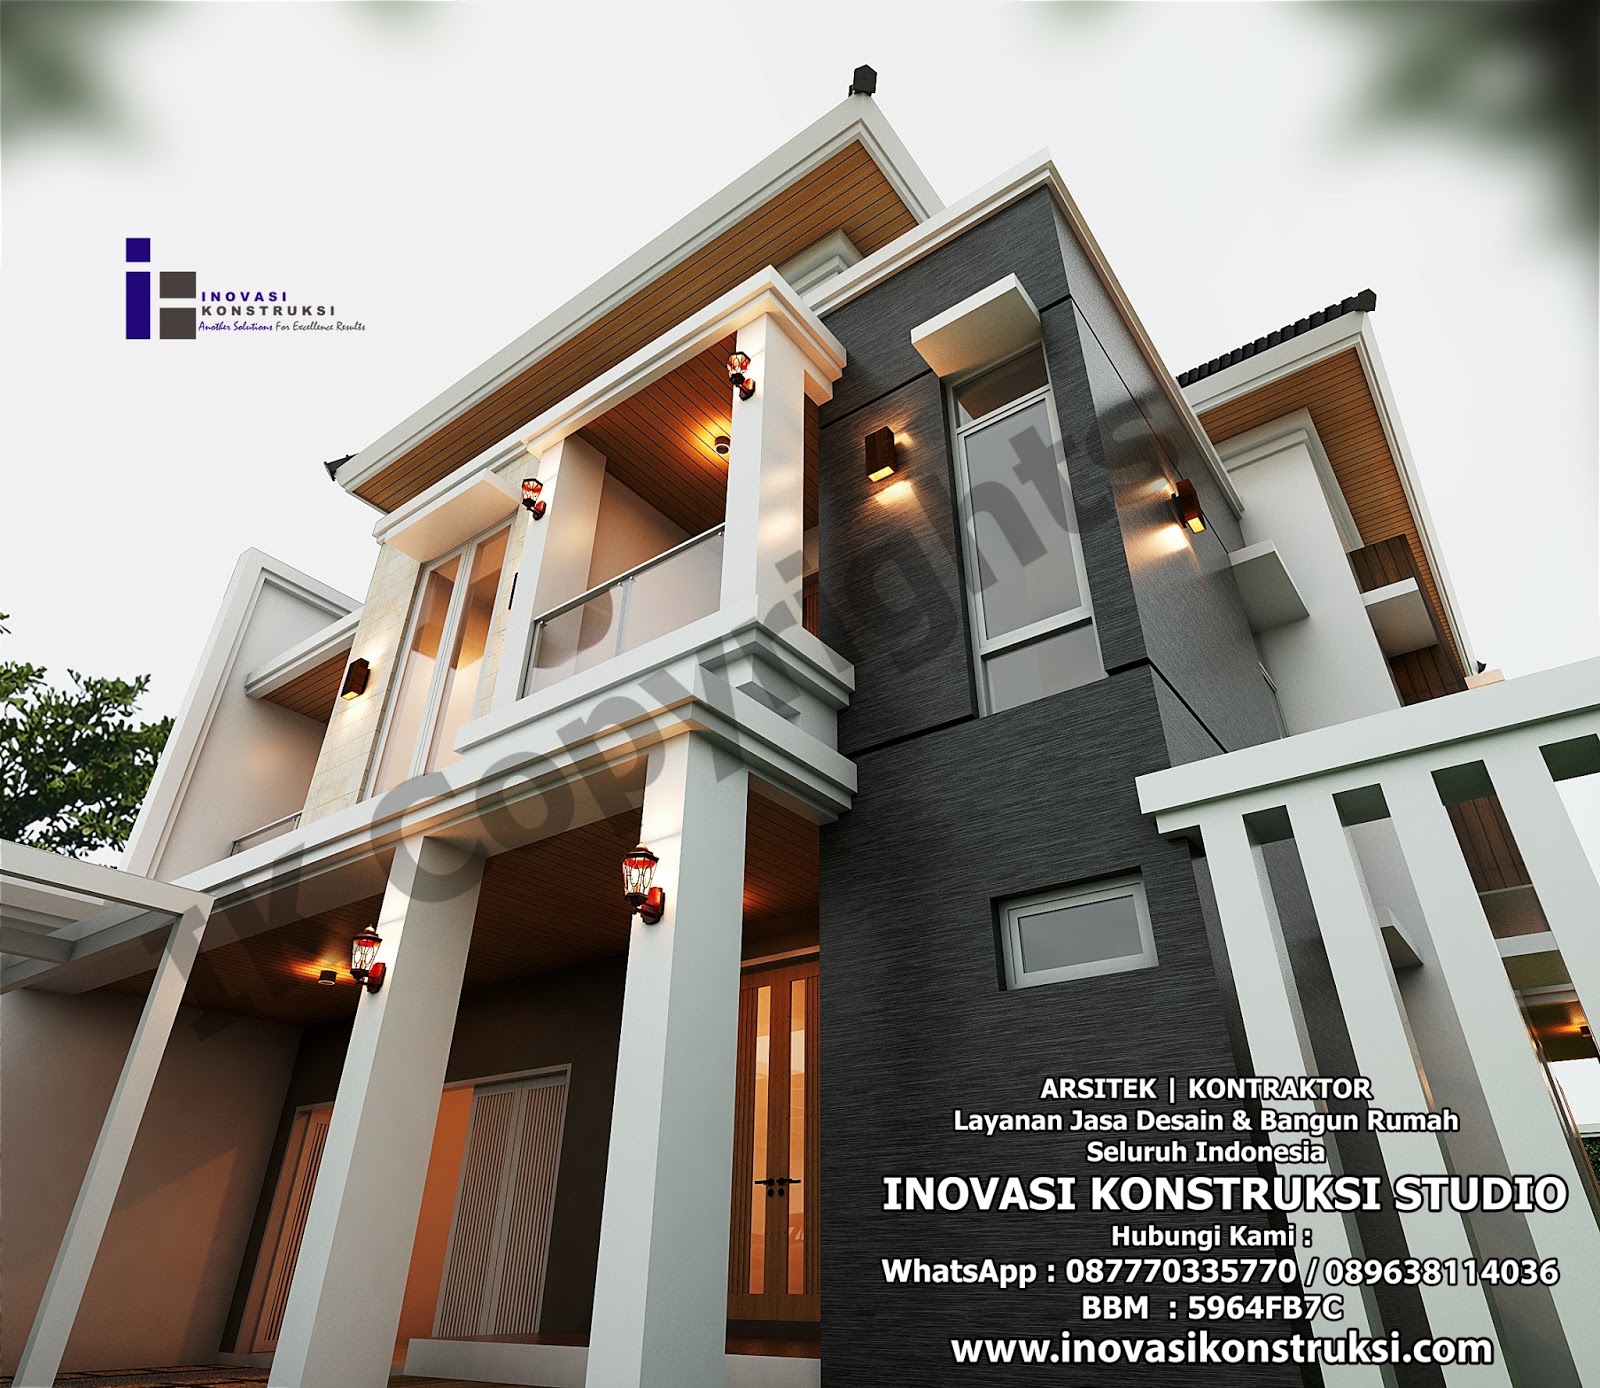 Desain Rumah Ibu Windra Di Bogor Inovasi Konstruksi